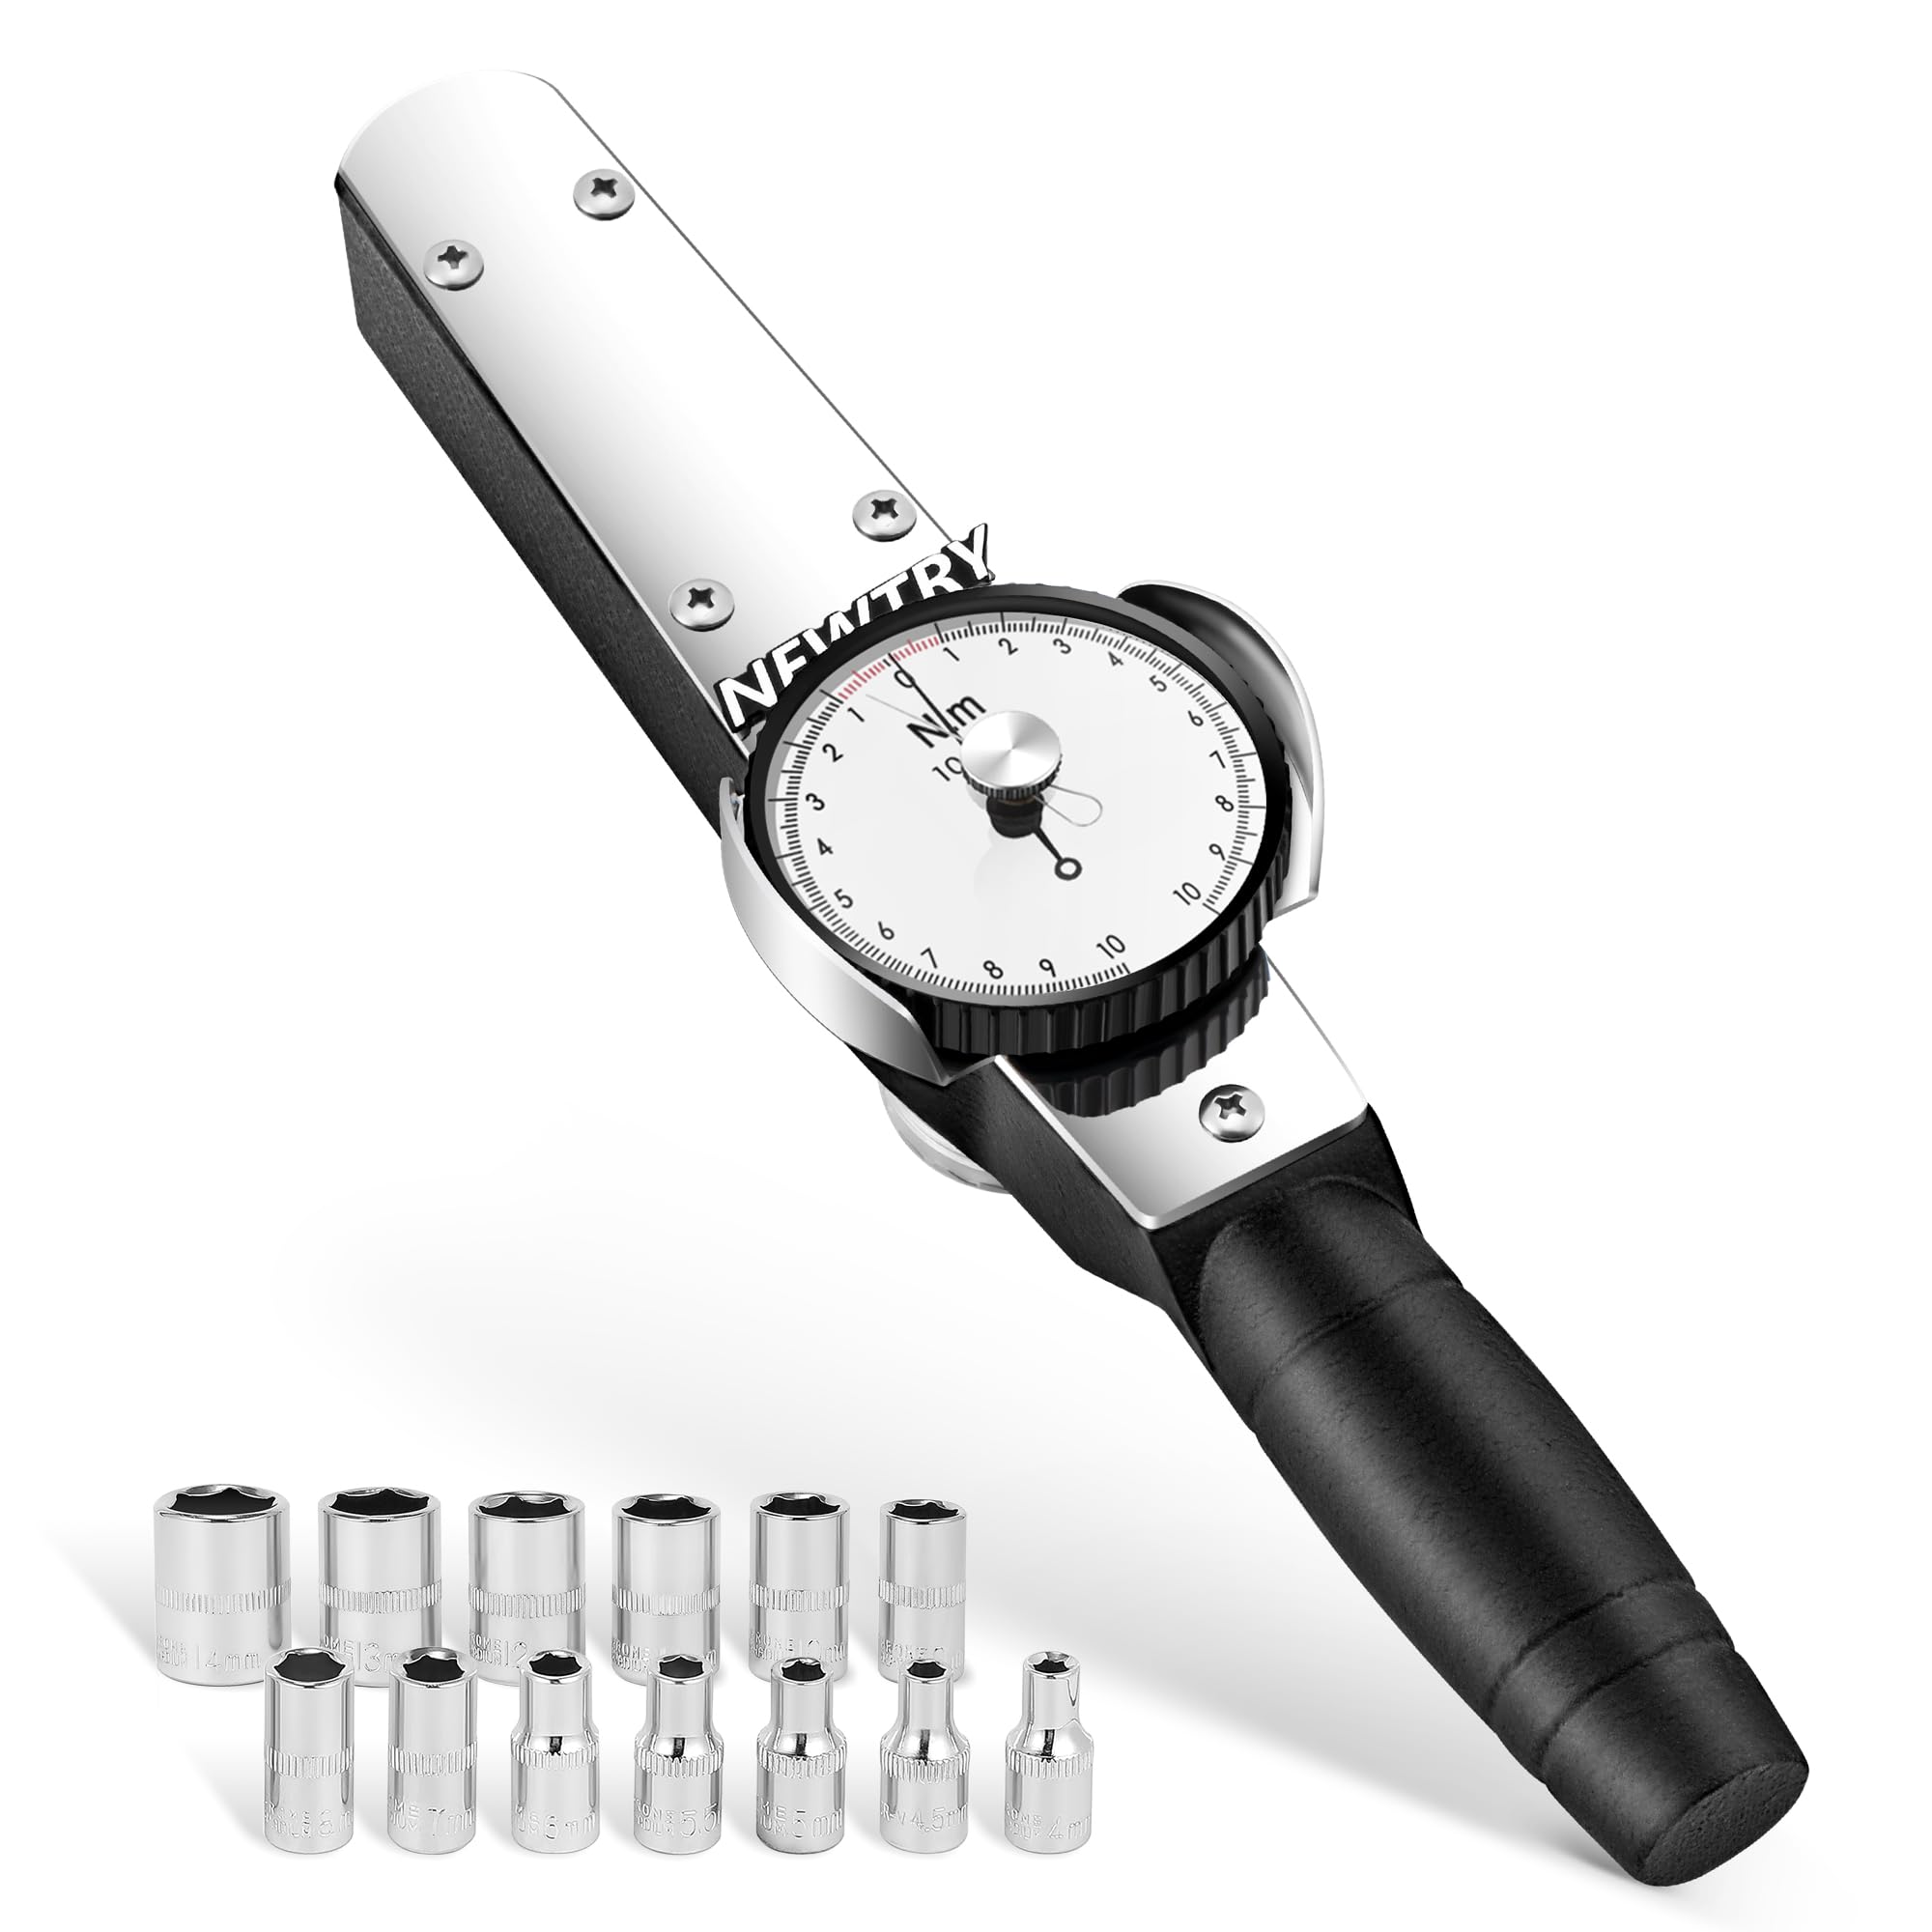 NEWTRY Drehmomentschlüssel Dynamometer Drehmomentmesser Digitaler Zeiger Kraftmessgerät (1-10Nm)